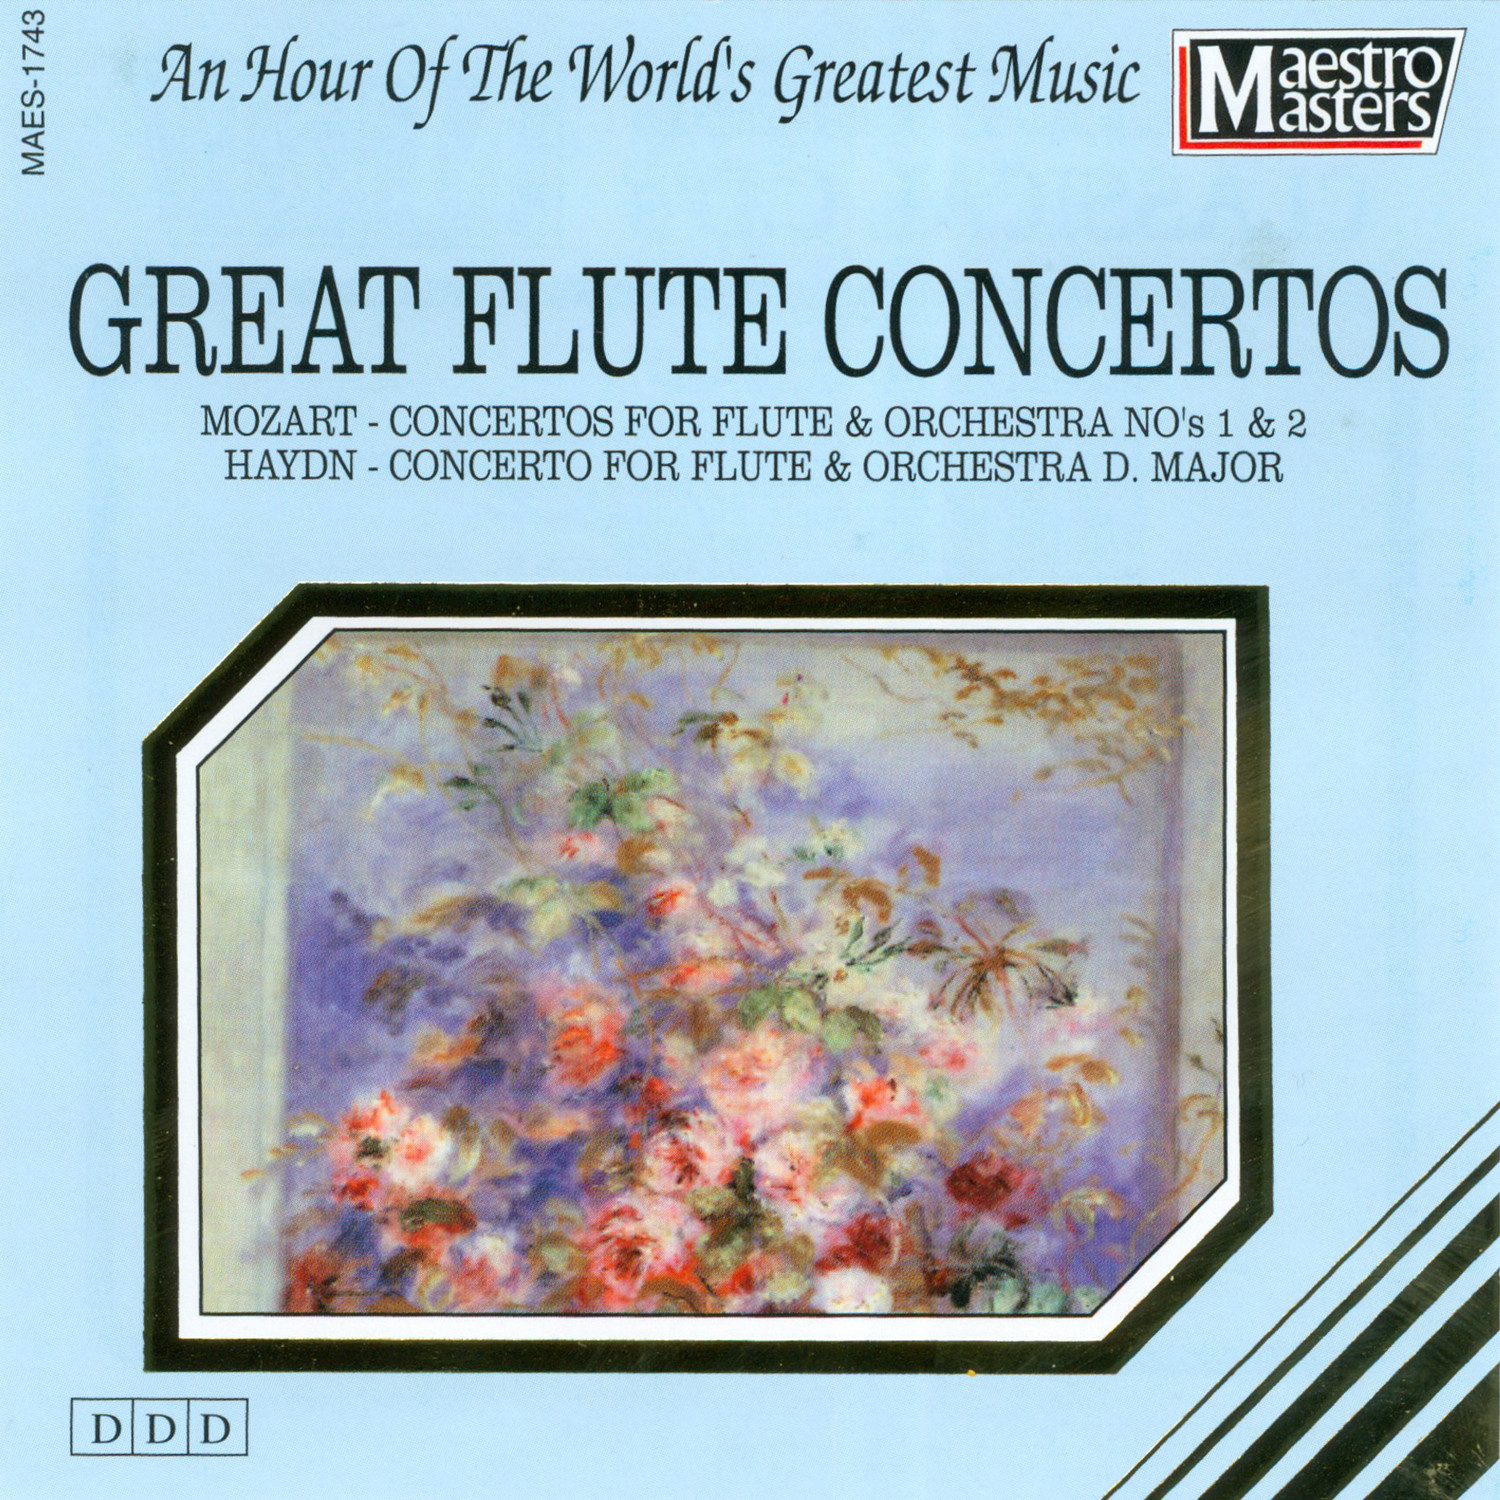 Great Flute Concertos